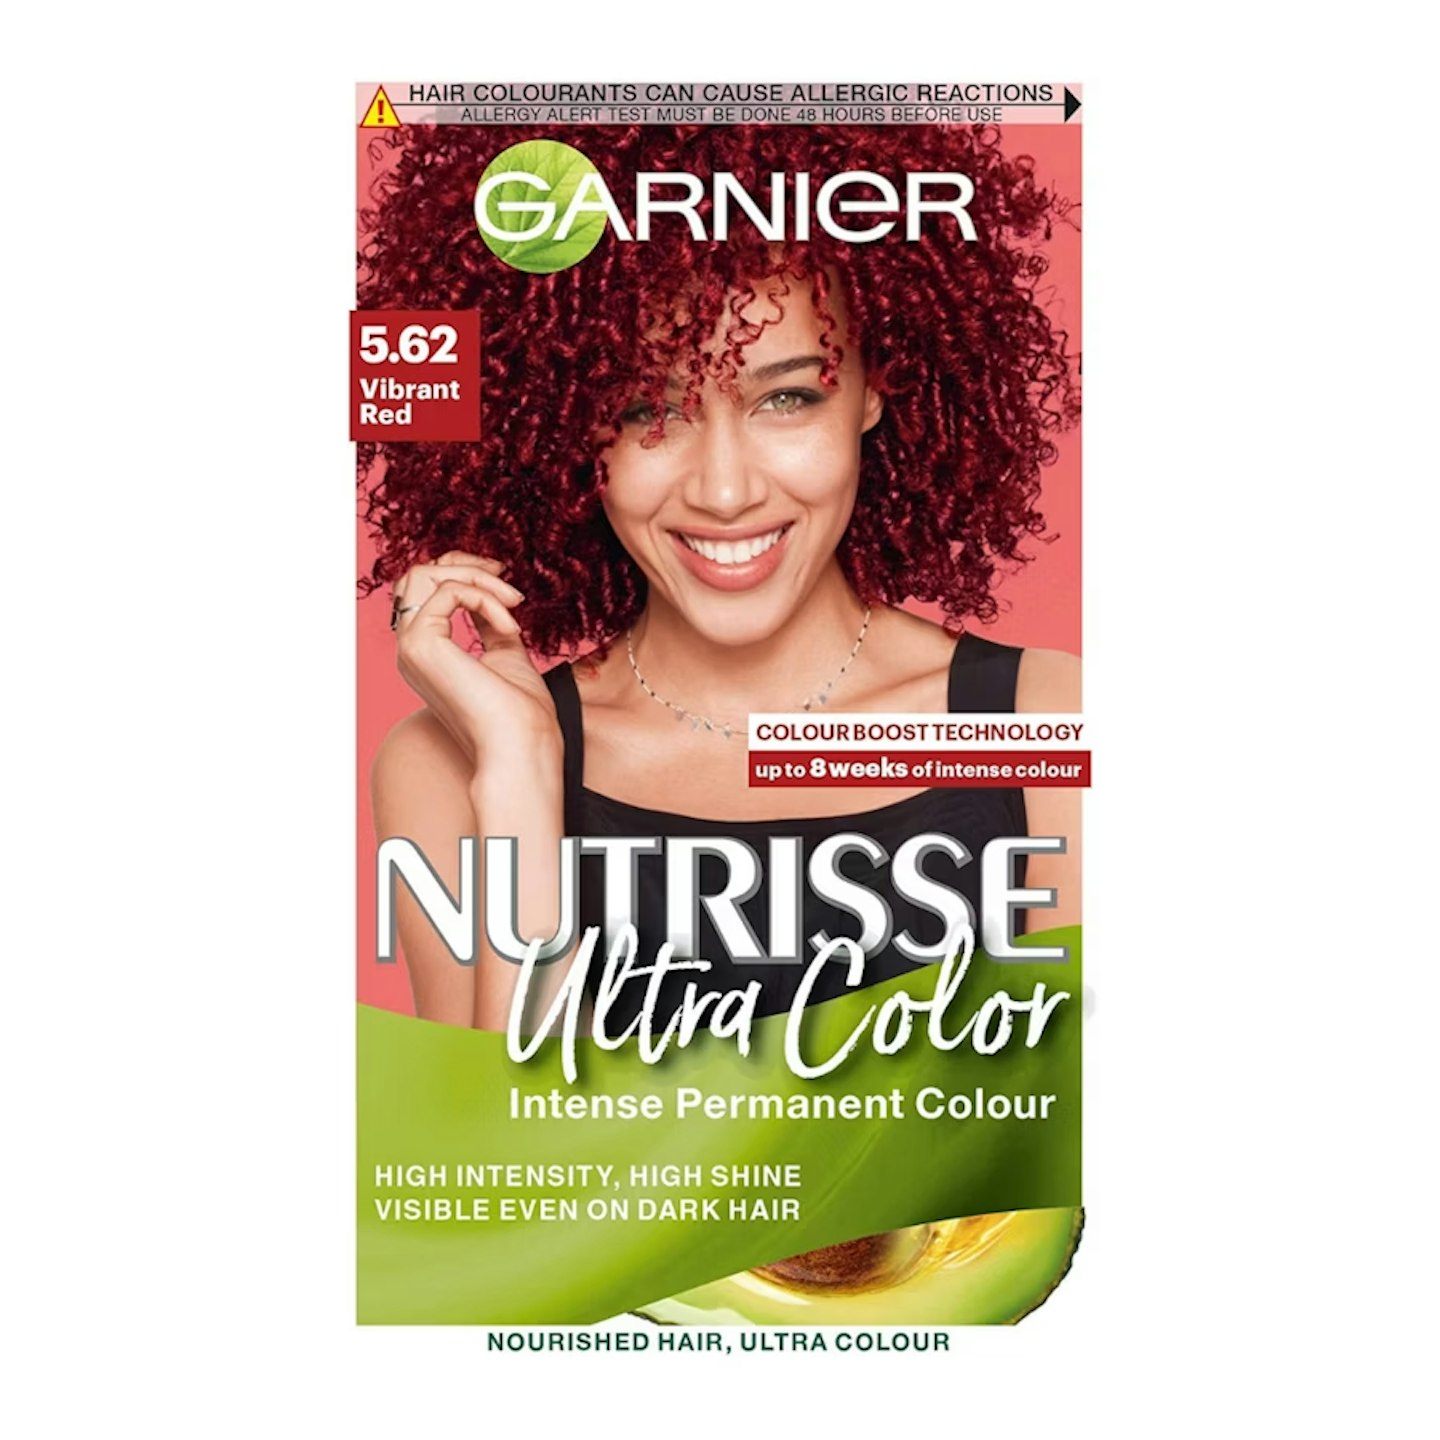 Garnier Nutrisse Ultra Color, 5.62 Vibrant Red